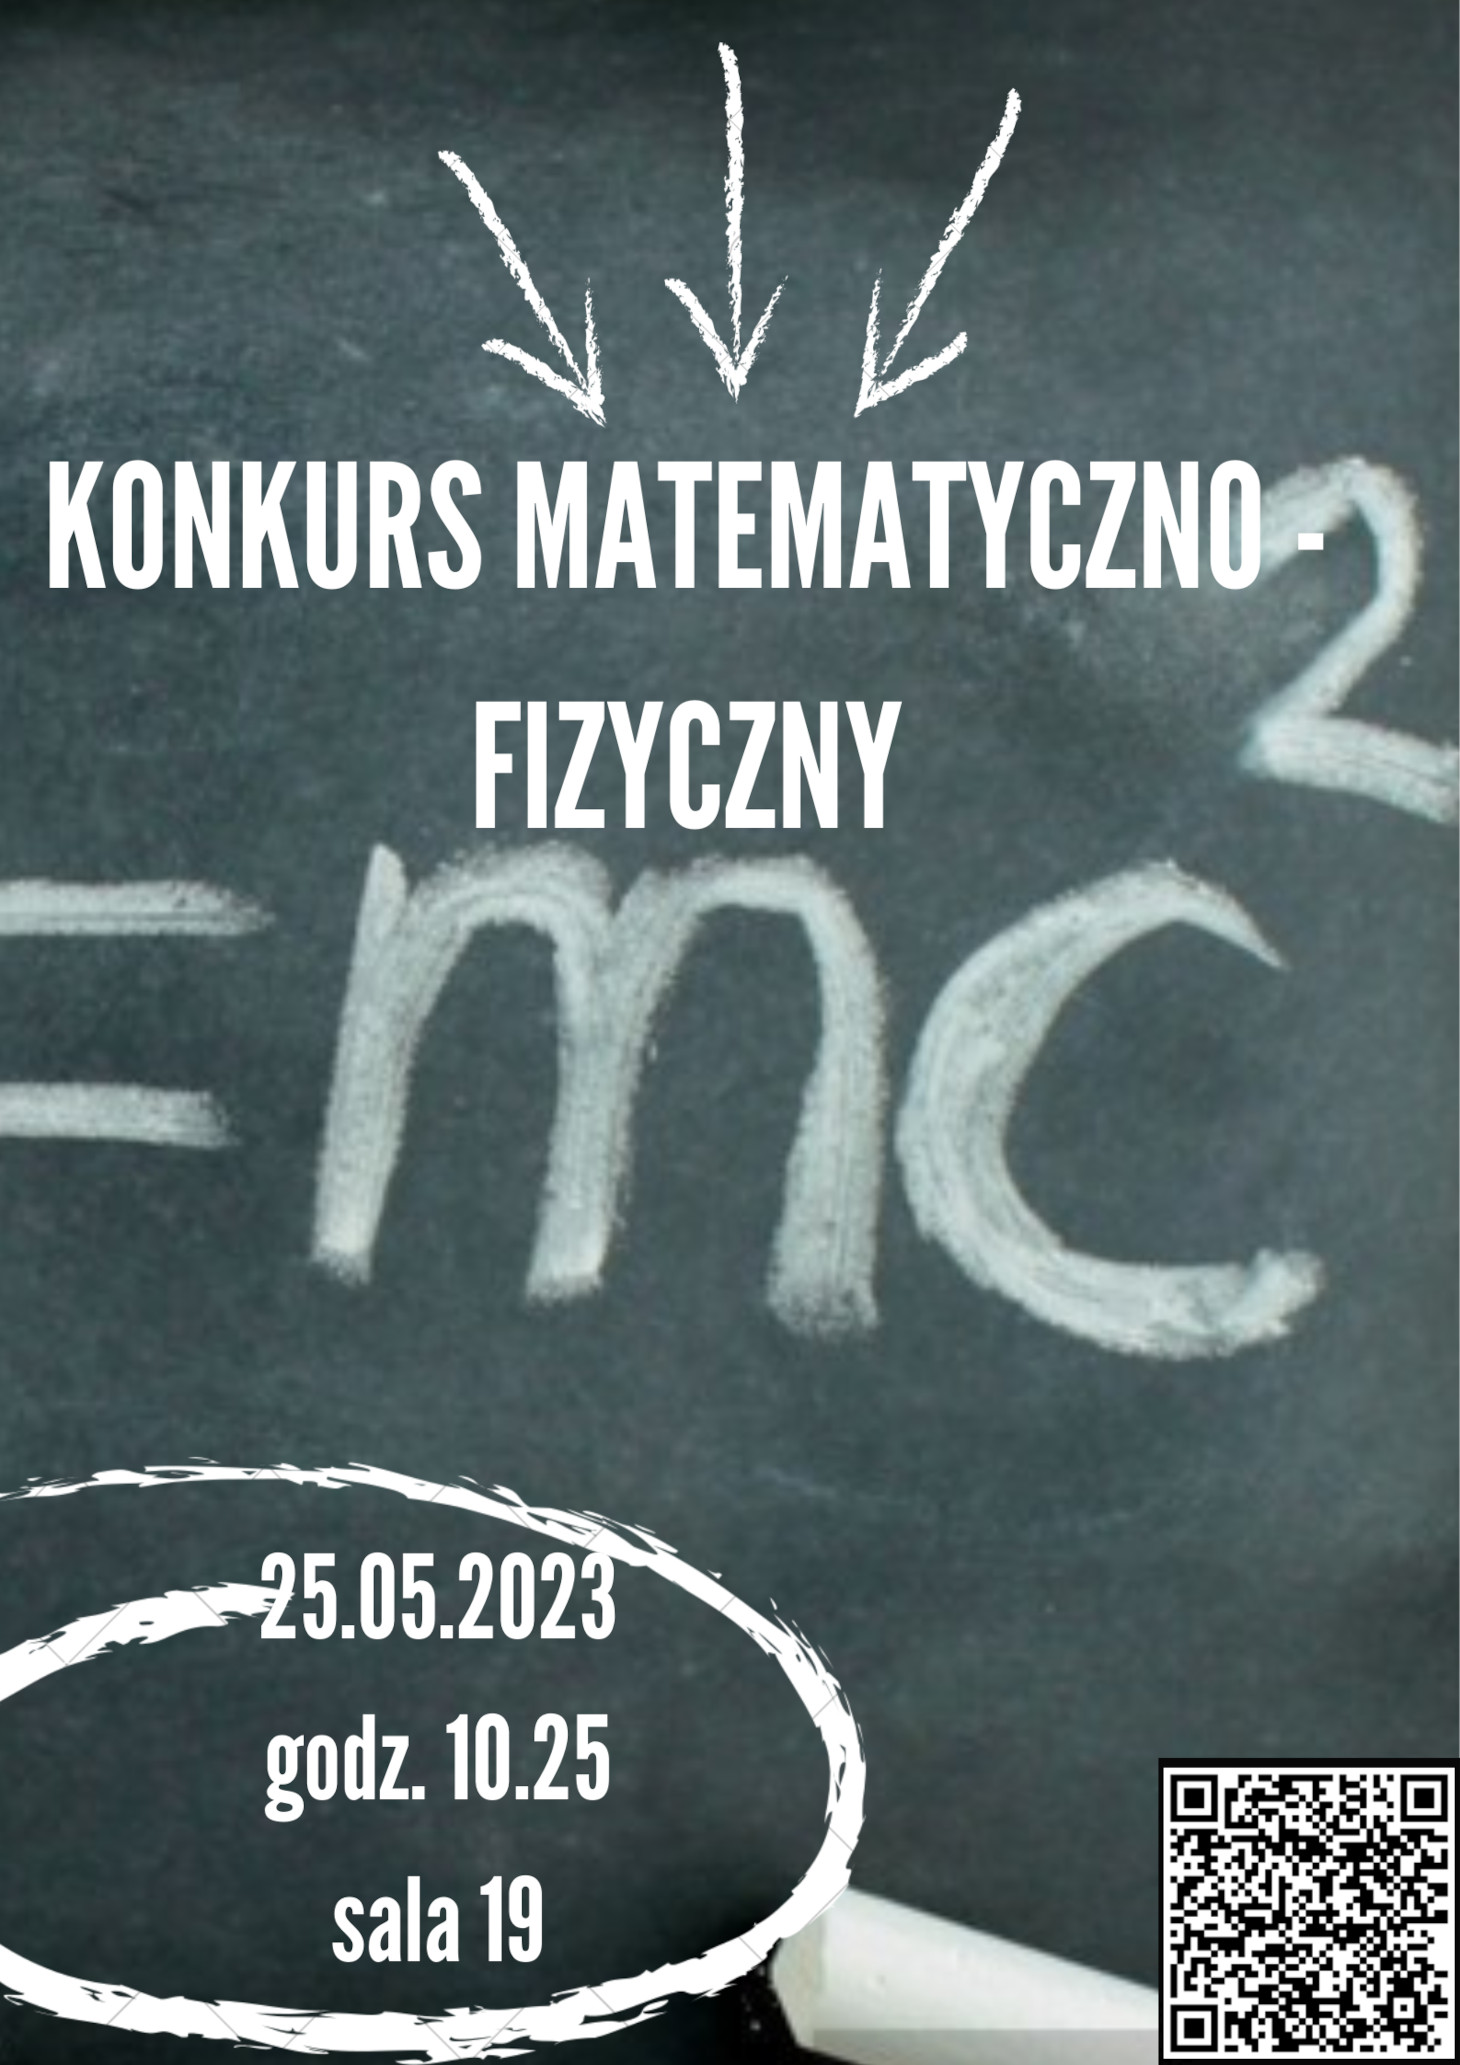 Plakat konkurs matematyczno-fizyczny